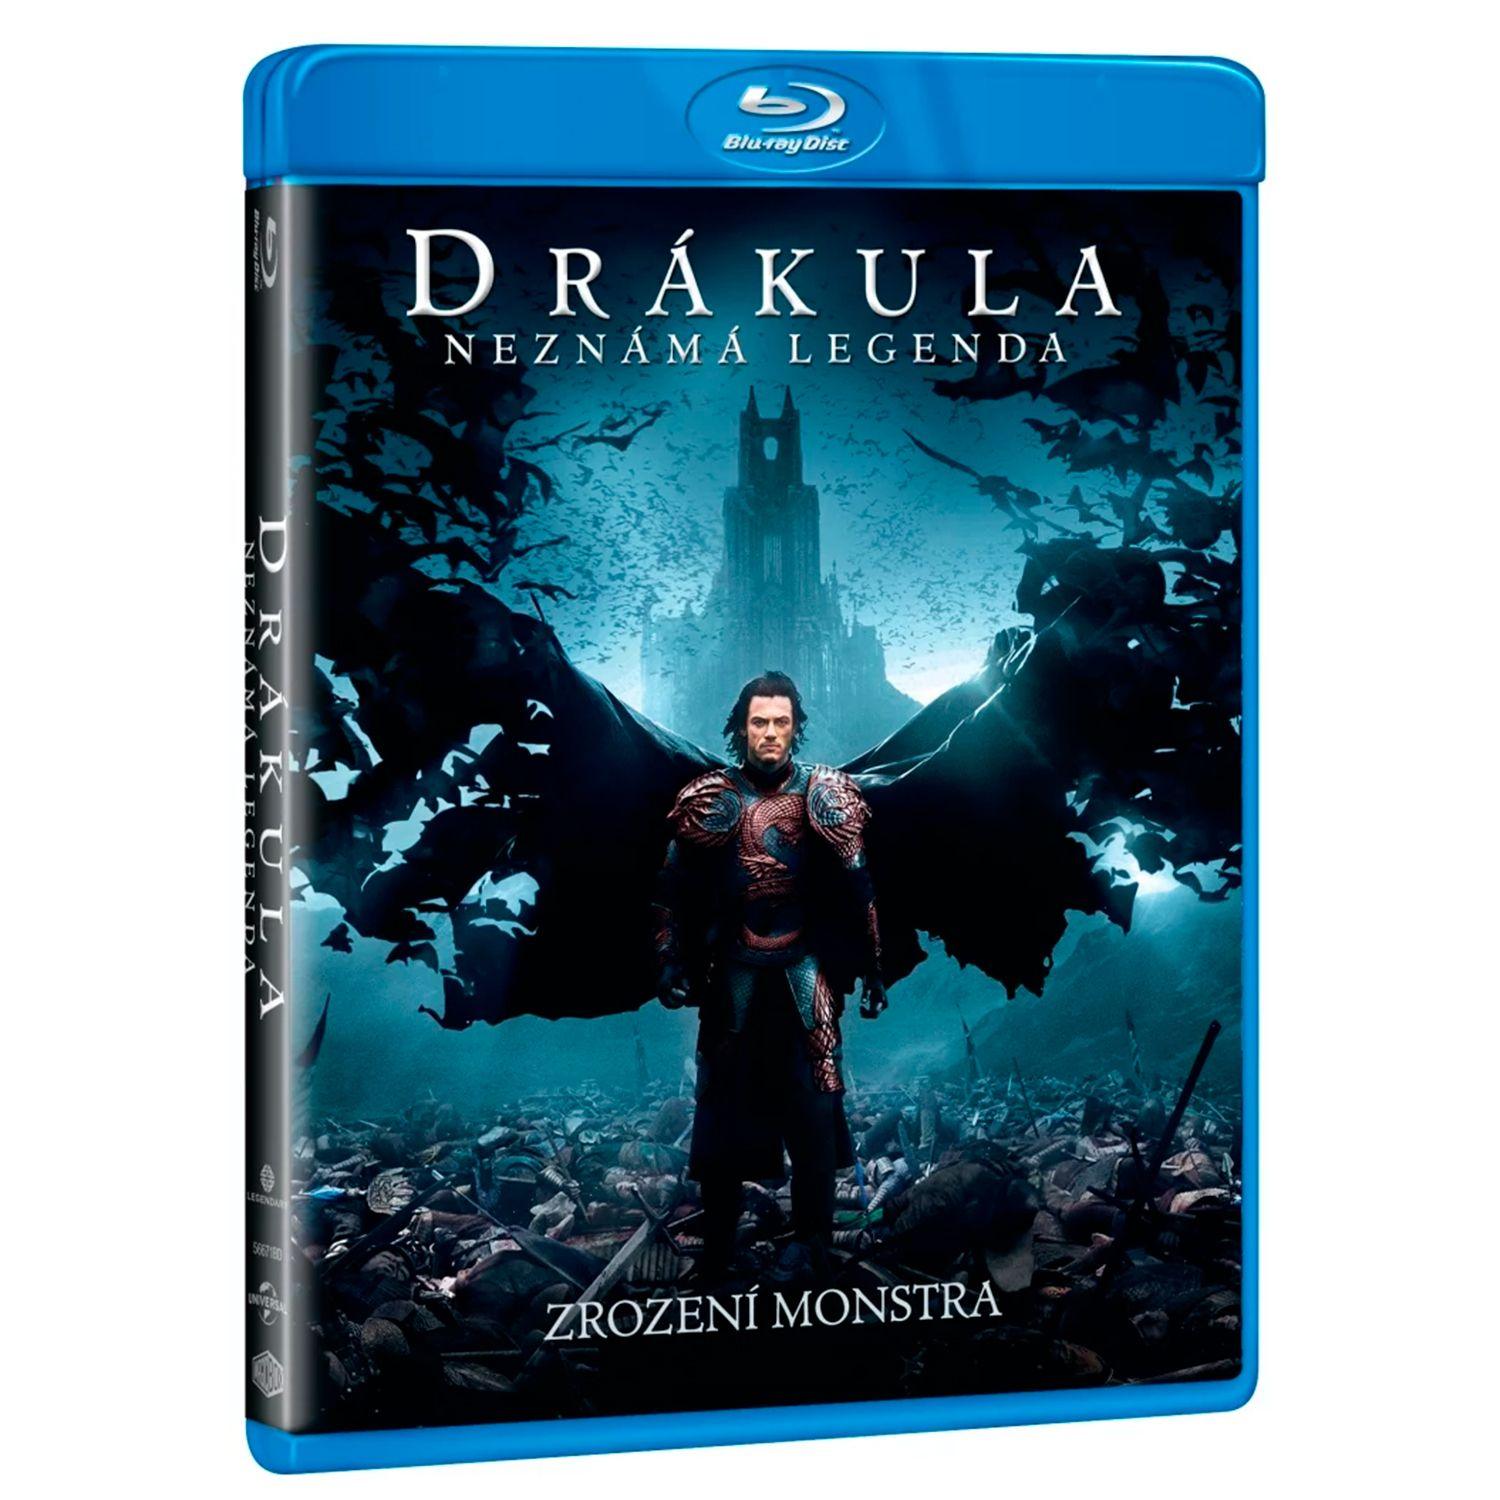 Дракула [2014] (Blu-ray)